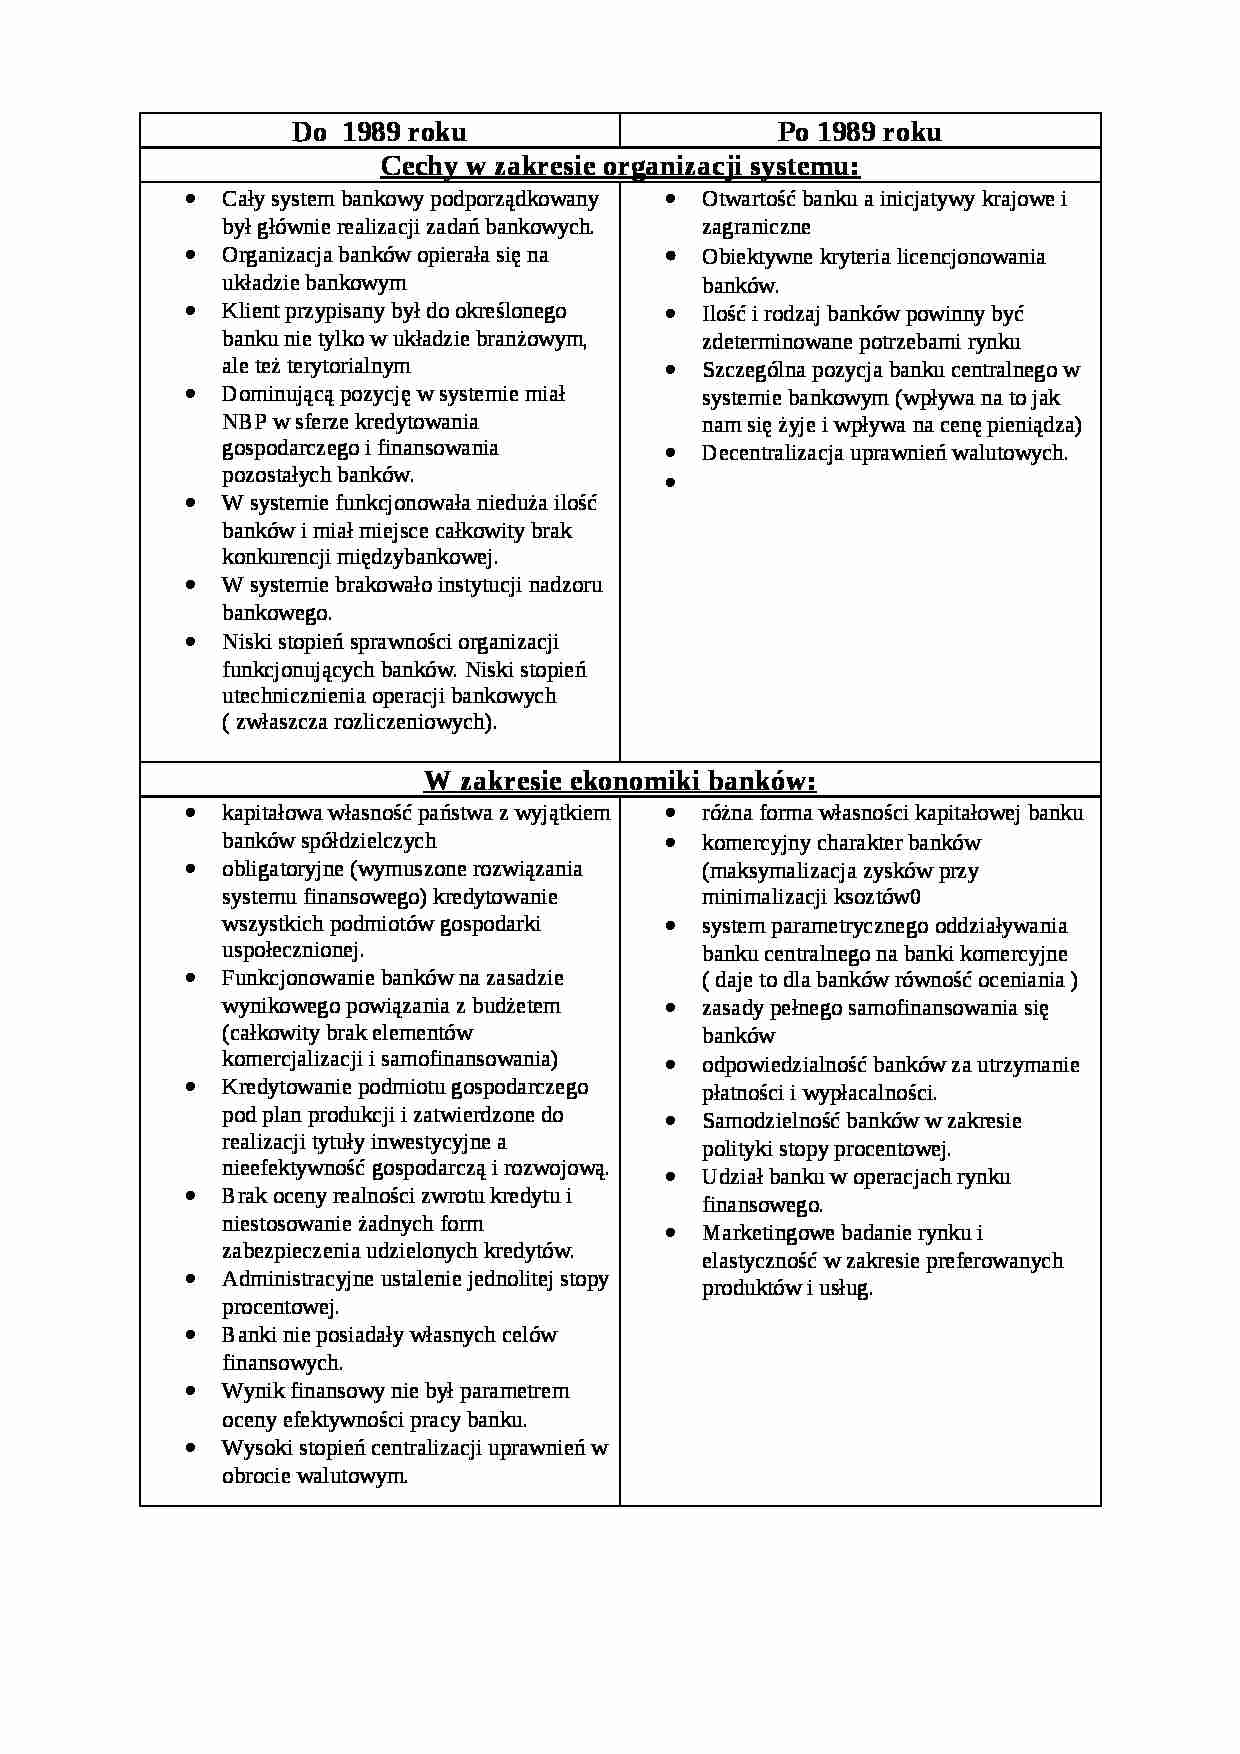 Cechy w zakresie organizacji systemu - strona 1